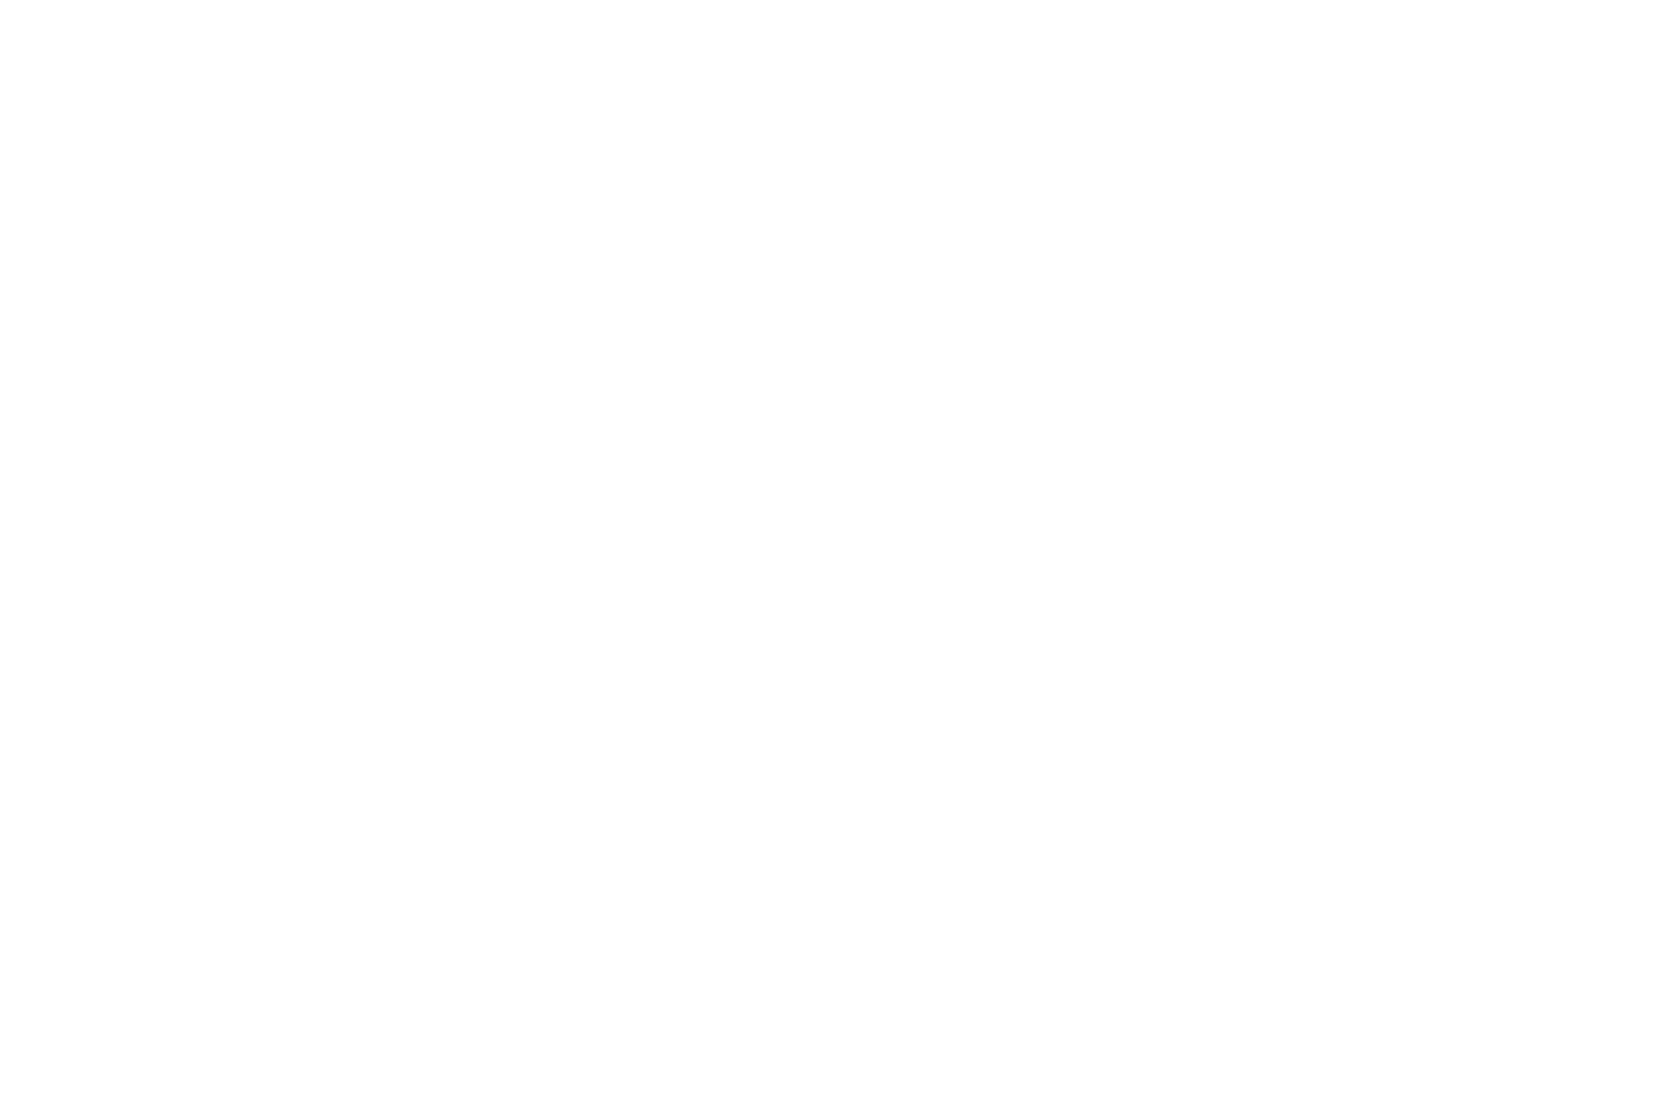 Анатолий Хомич (Беларусь) во время соревнований (метание диска). Фото Дениса Костюченко